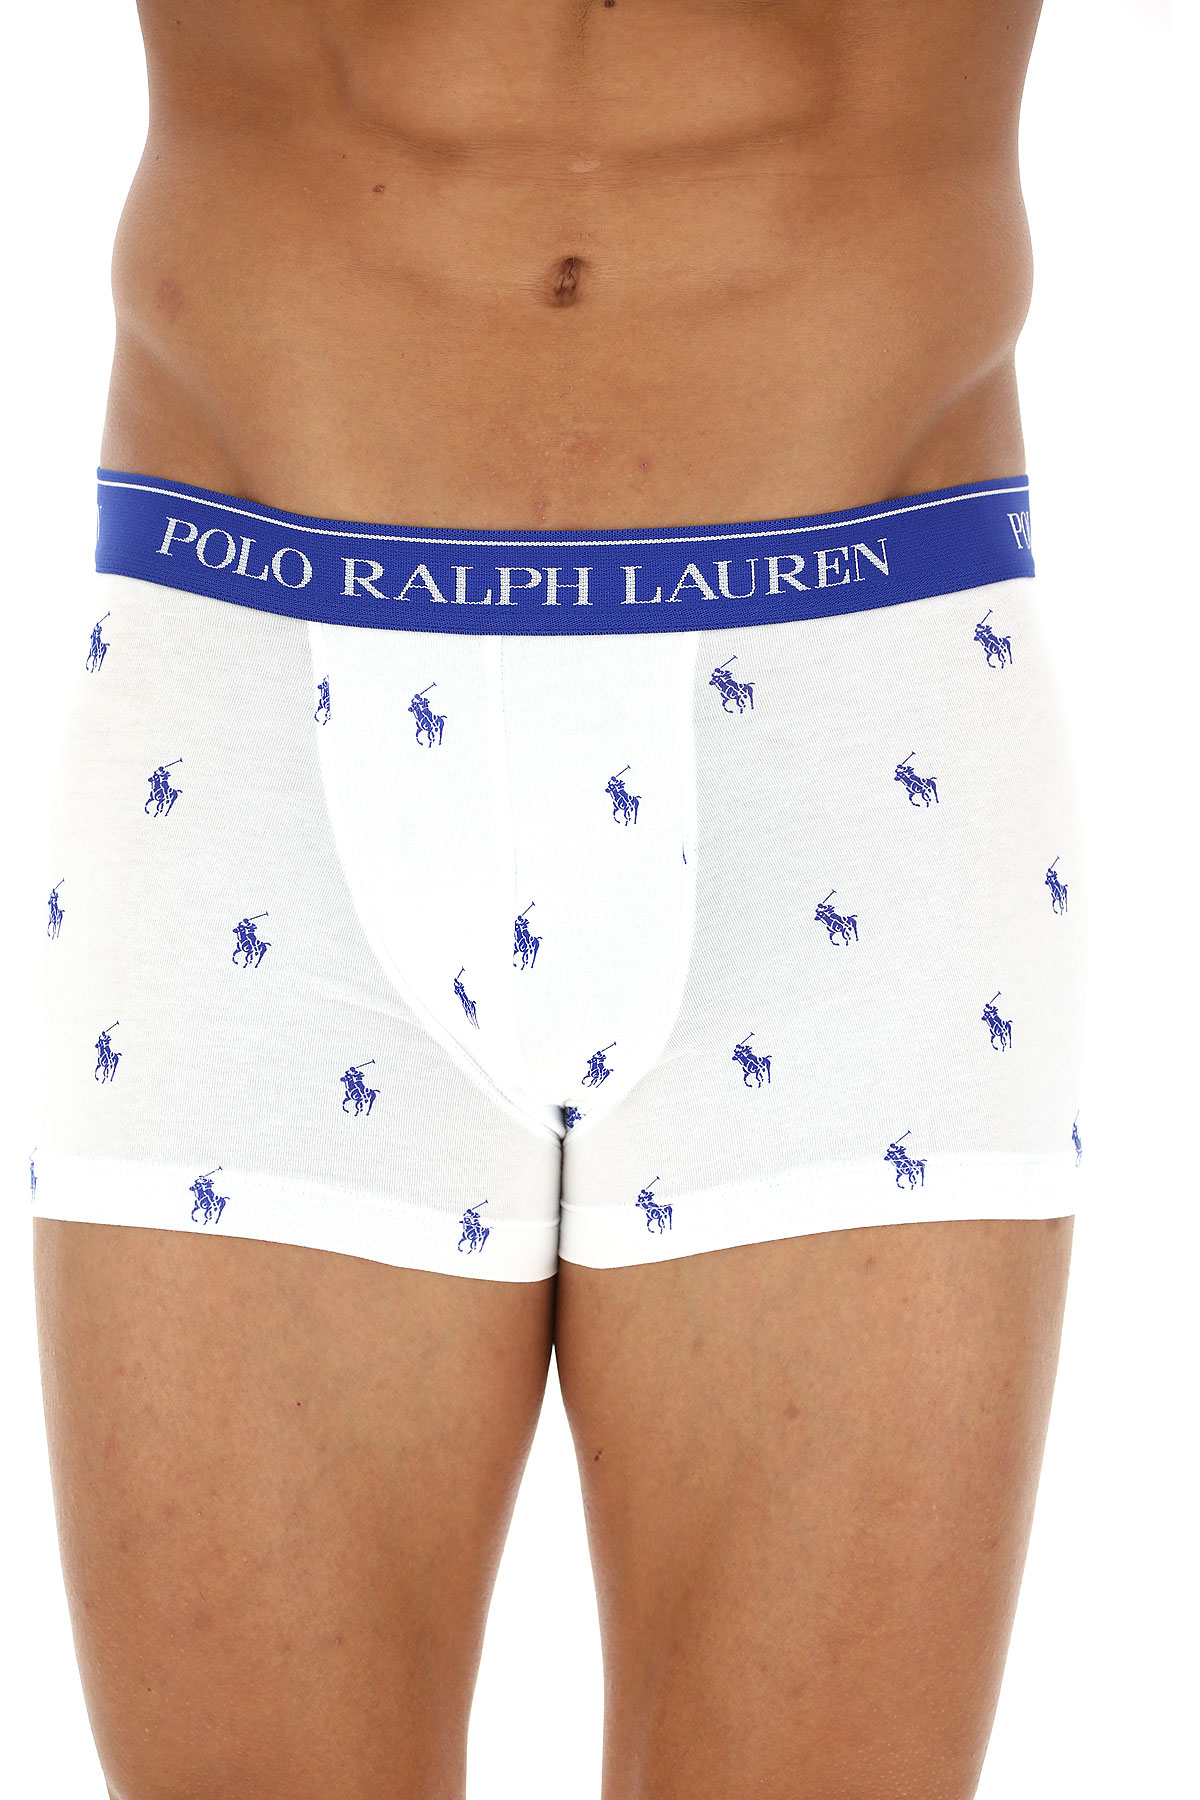 Ralph Lauren Boxer Shorts für Herren, Unterhose, Short, Boxer Günstig im Sale, 2 Pack, Dunkel Marineblau, Baumwolle, 2017, XL XXL